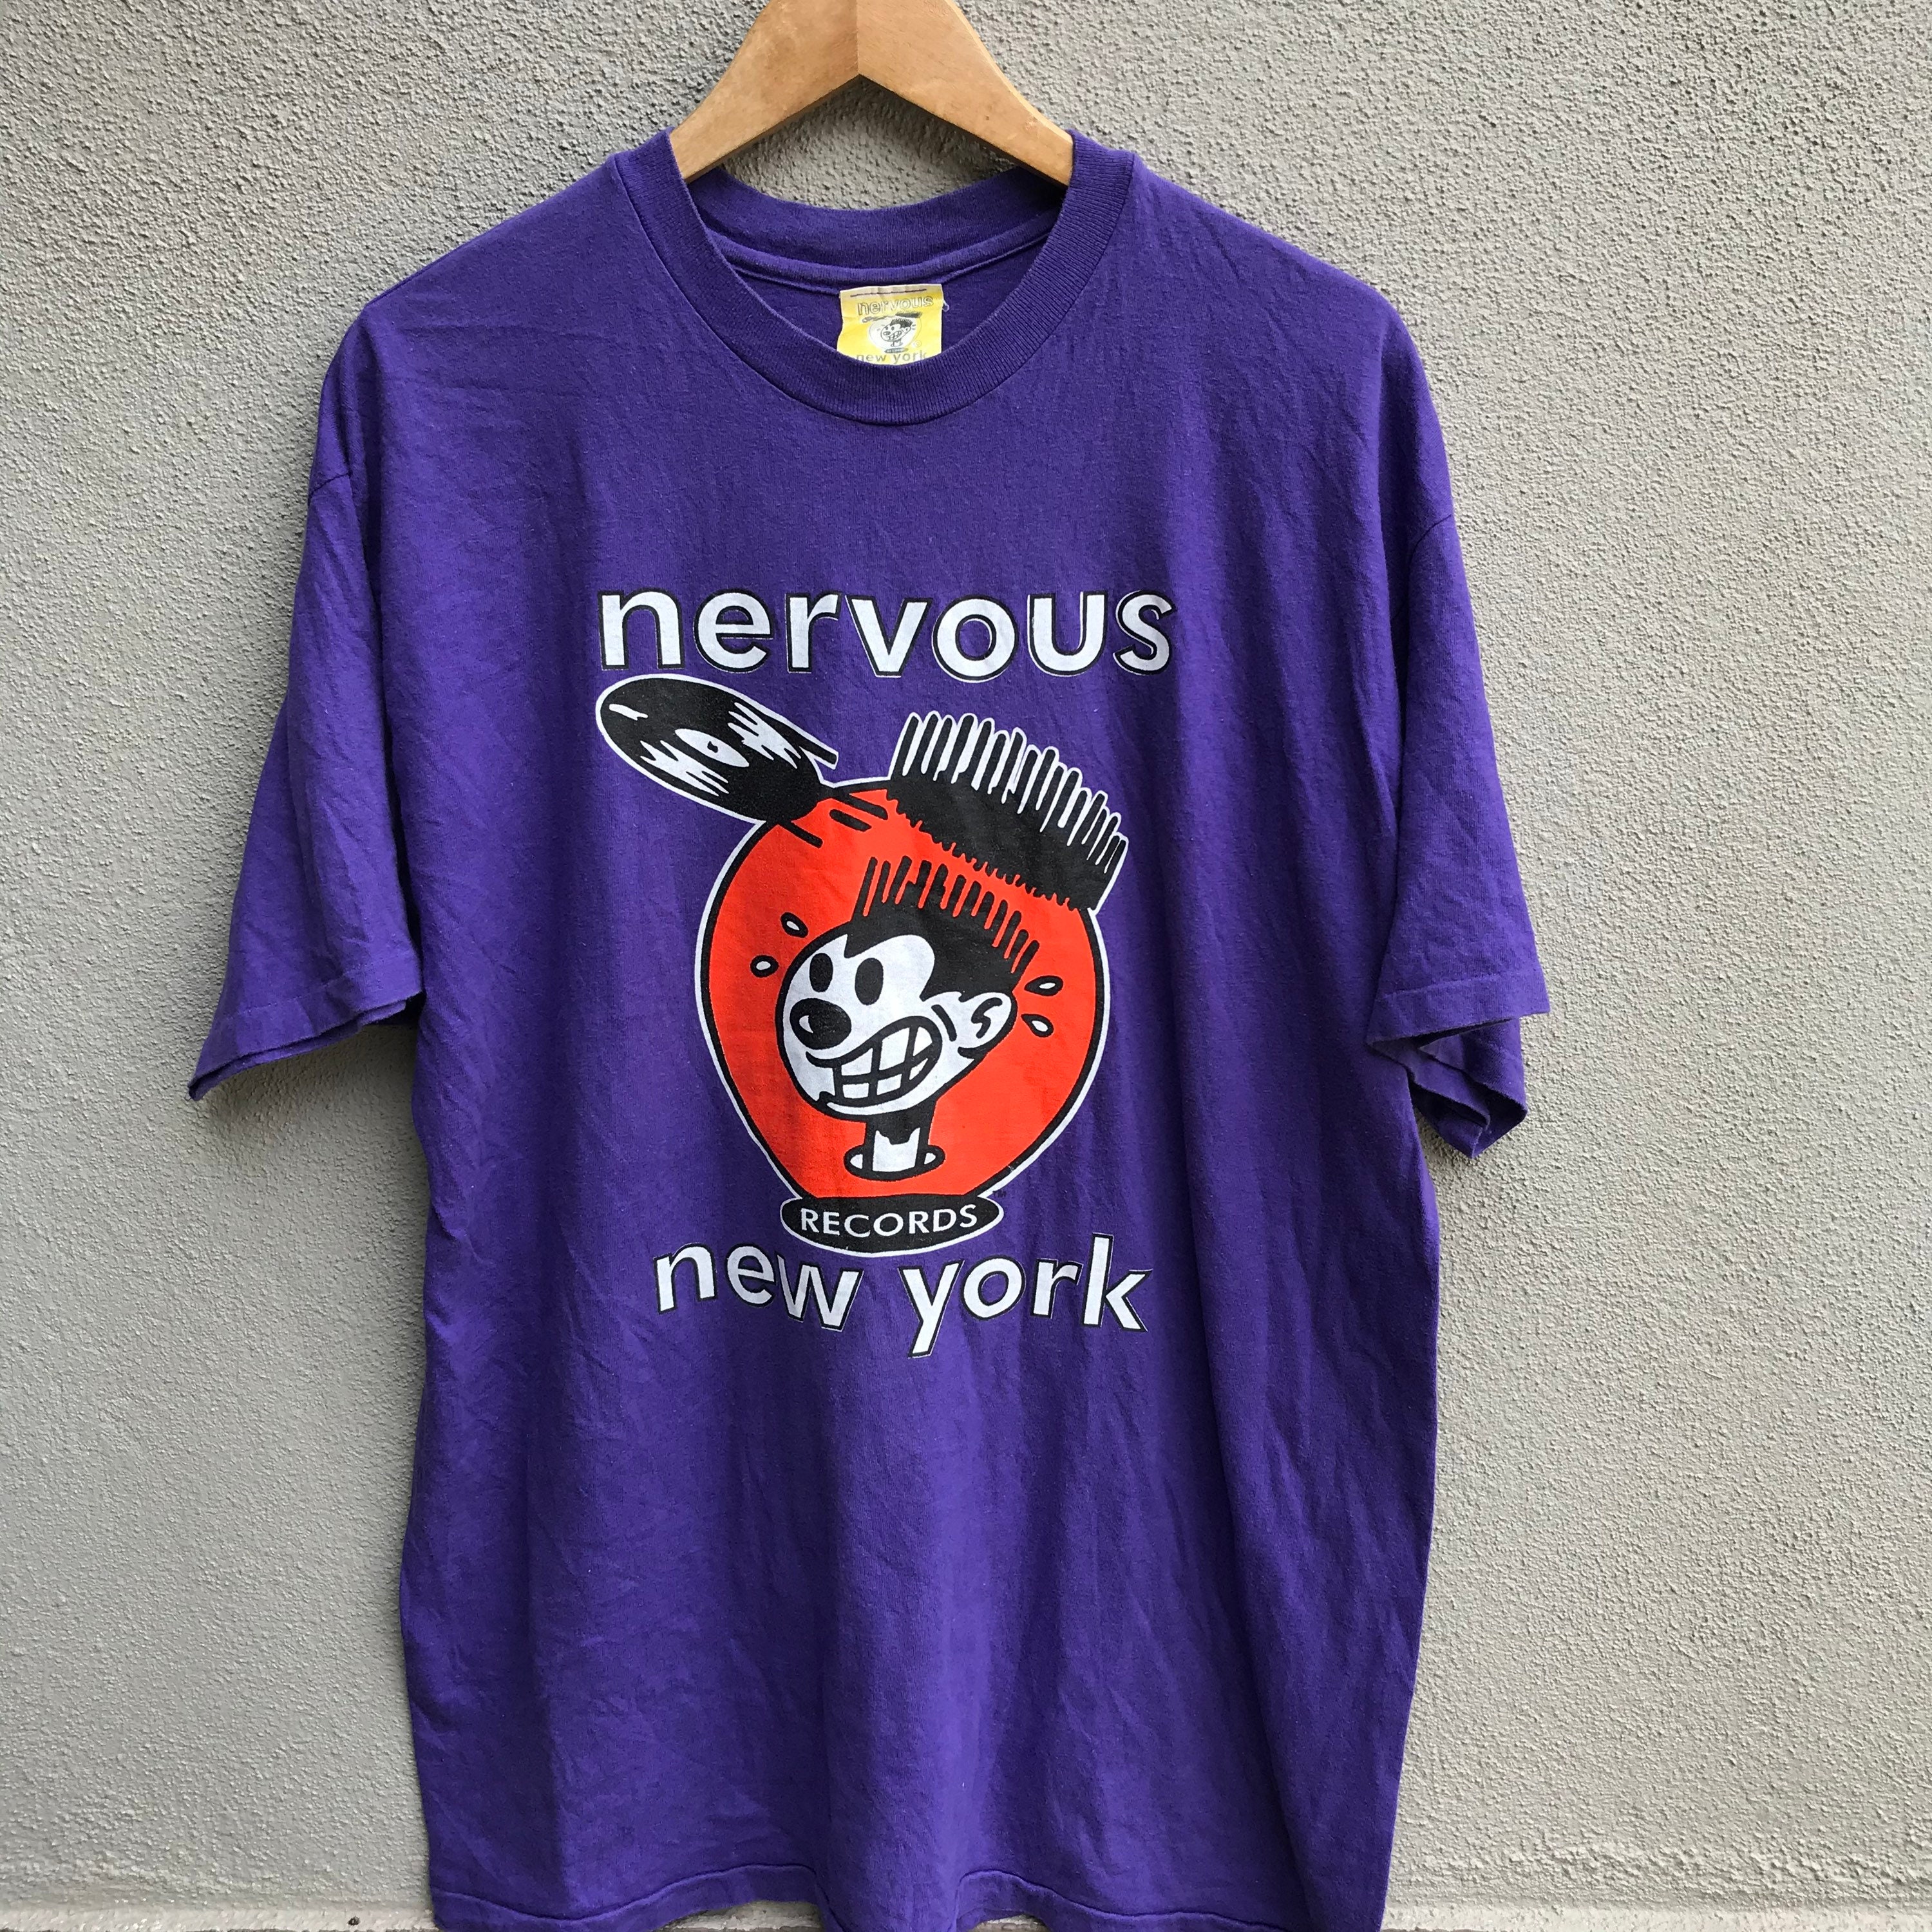 Nervous The Neighbourhood Awesome Shirts